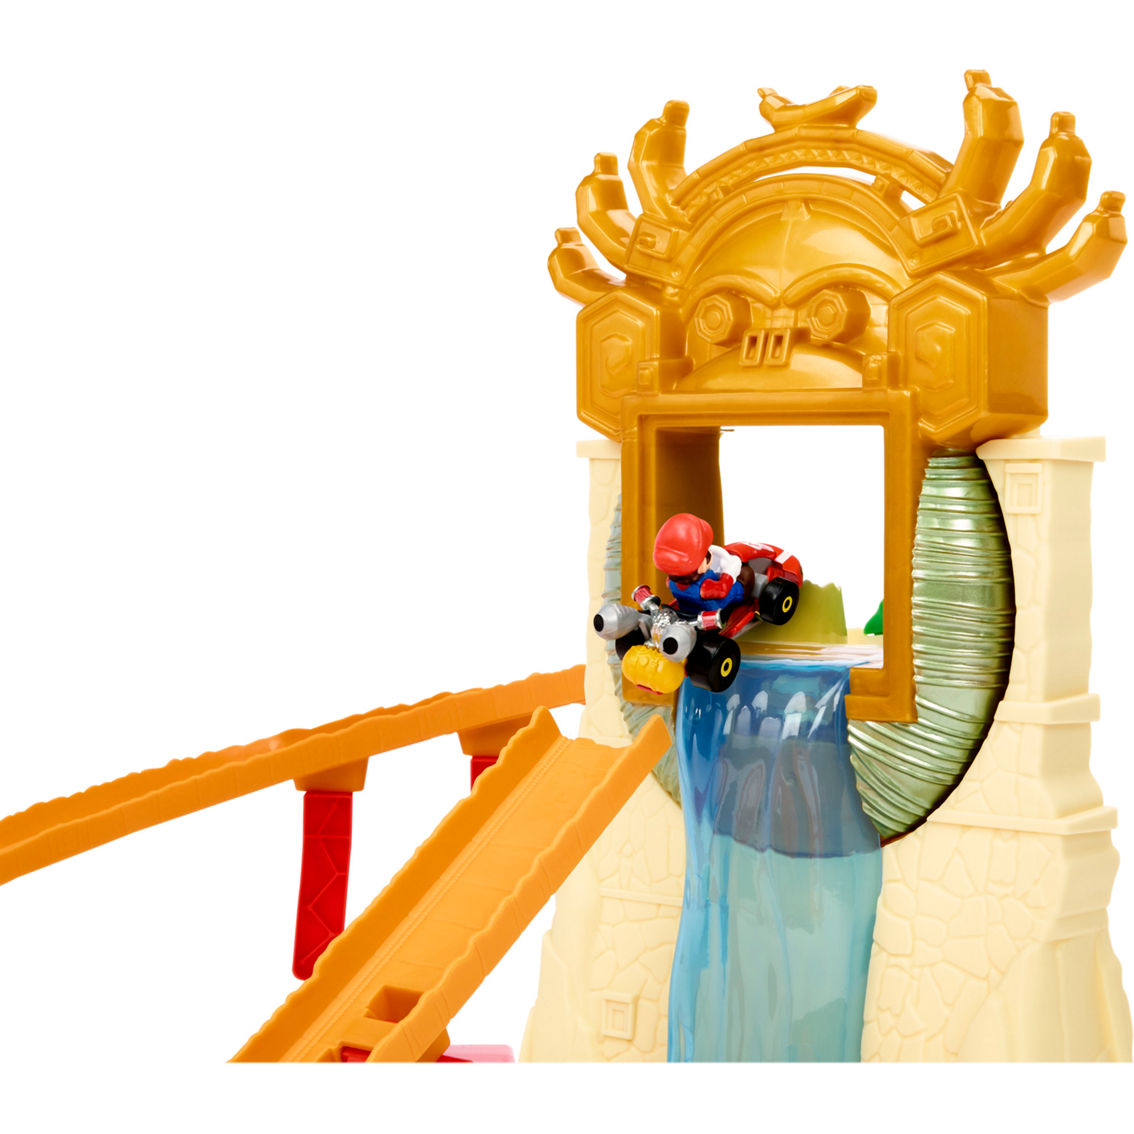 Hot Wheels Super Mario Bros. Movie Jungle Kingdom Raceway - Image 6 of 9